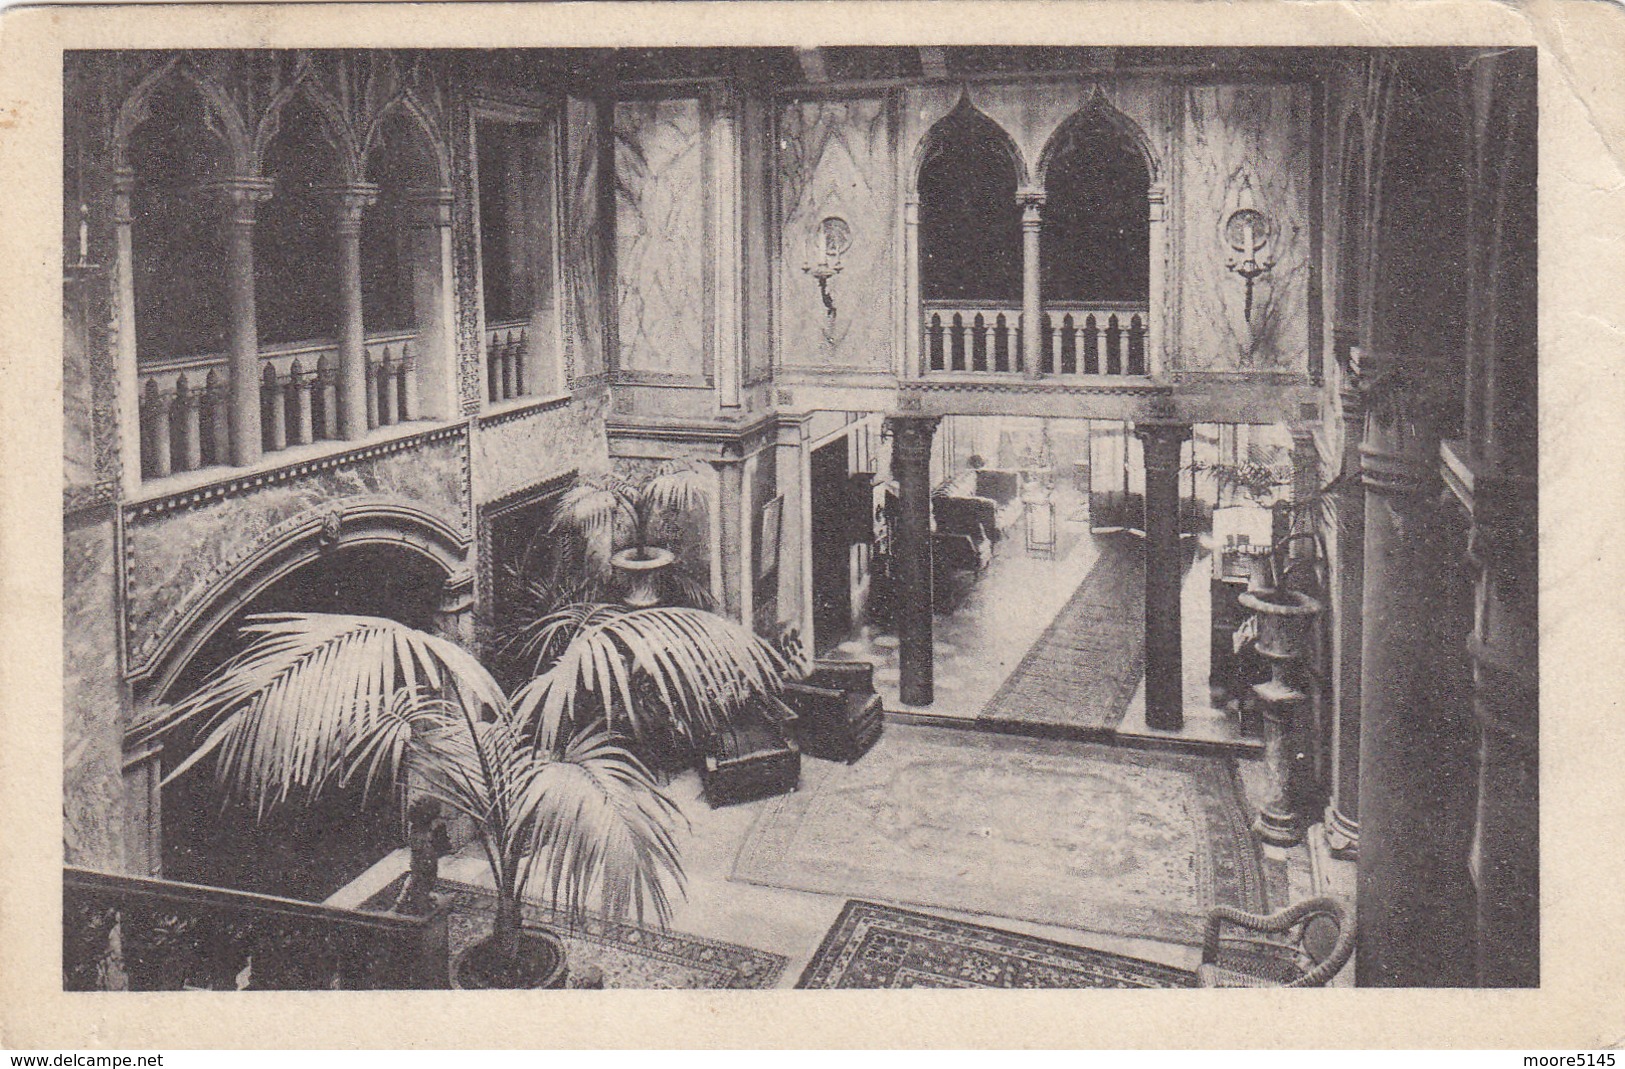 Postcard Hotel Lobby Interior 1920 Hotel Royal Danieli Ingresso E Vestibolo Dall'alto - Venezia (Venice)